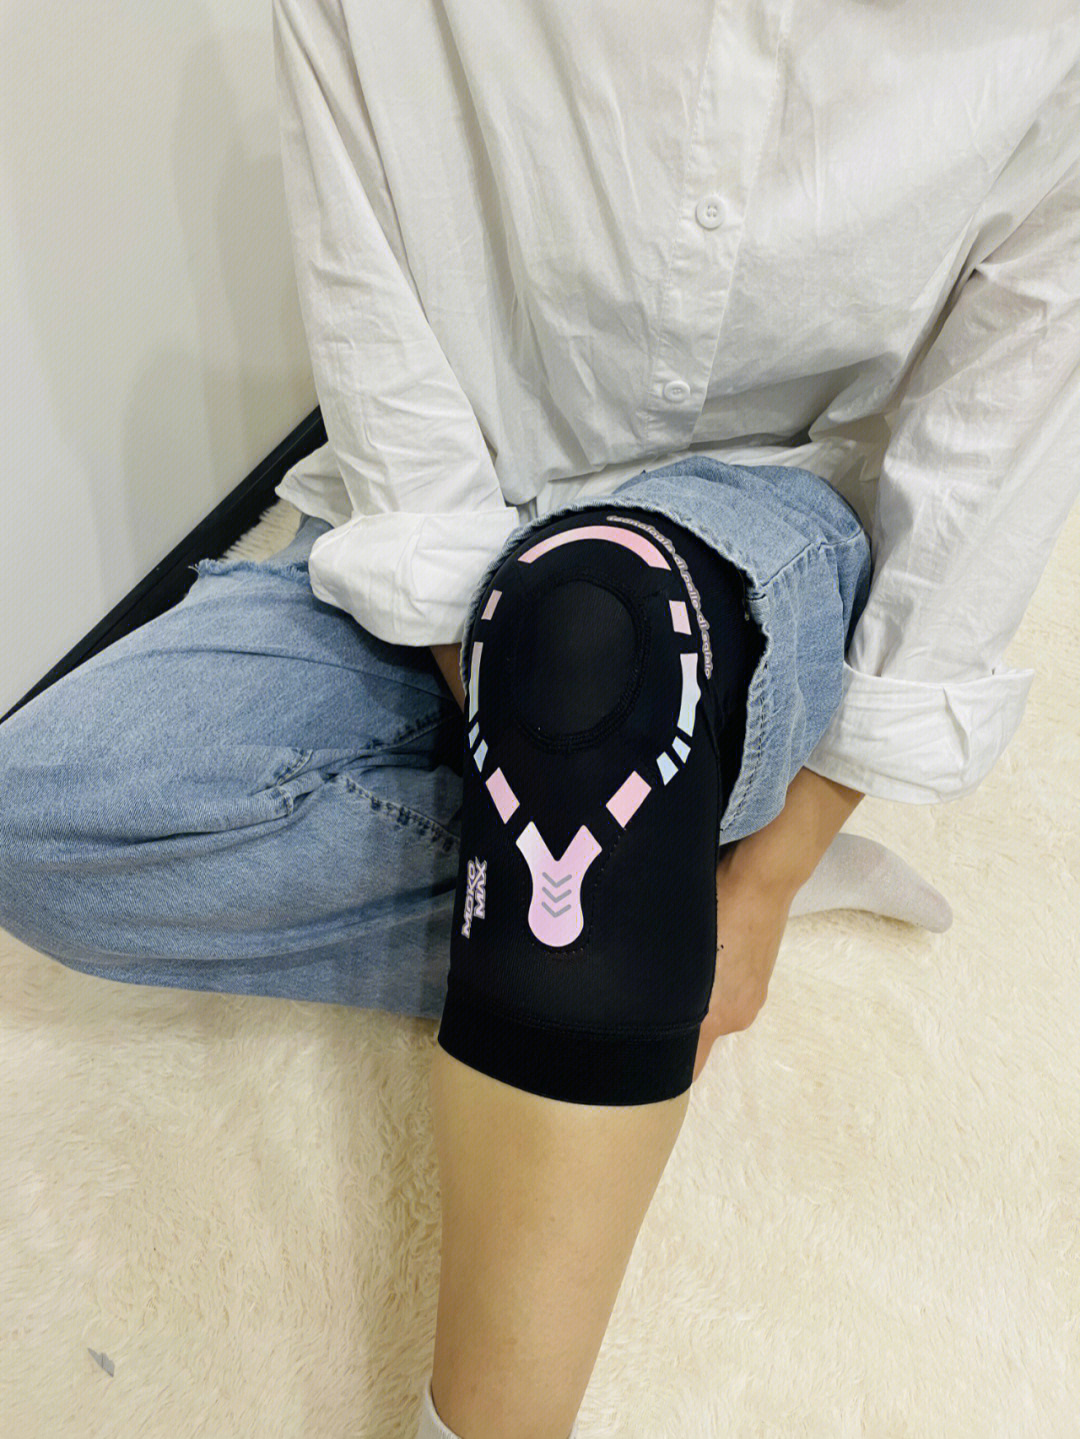 儿童护膝的正确戴法图片